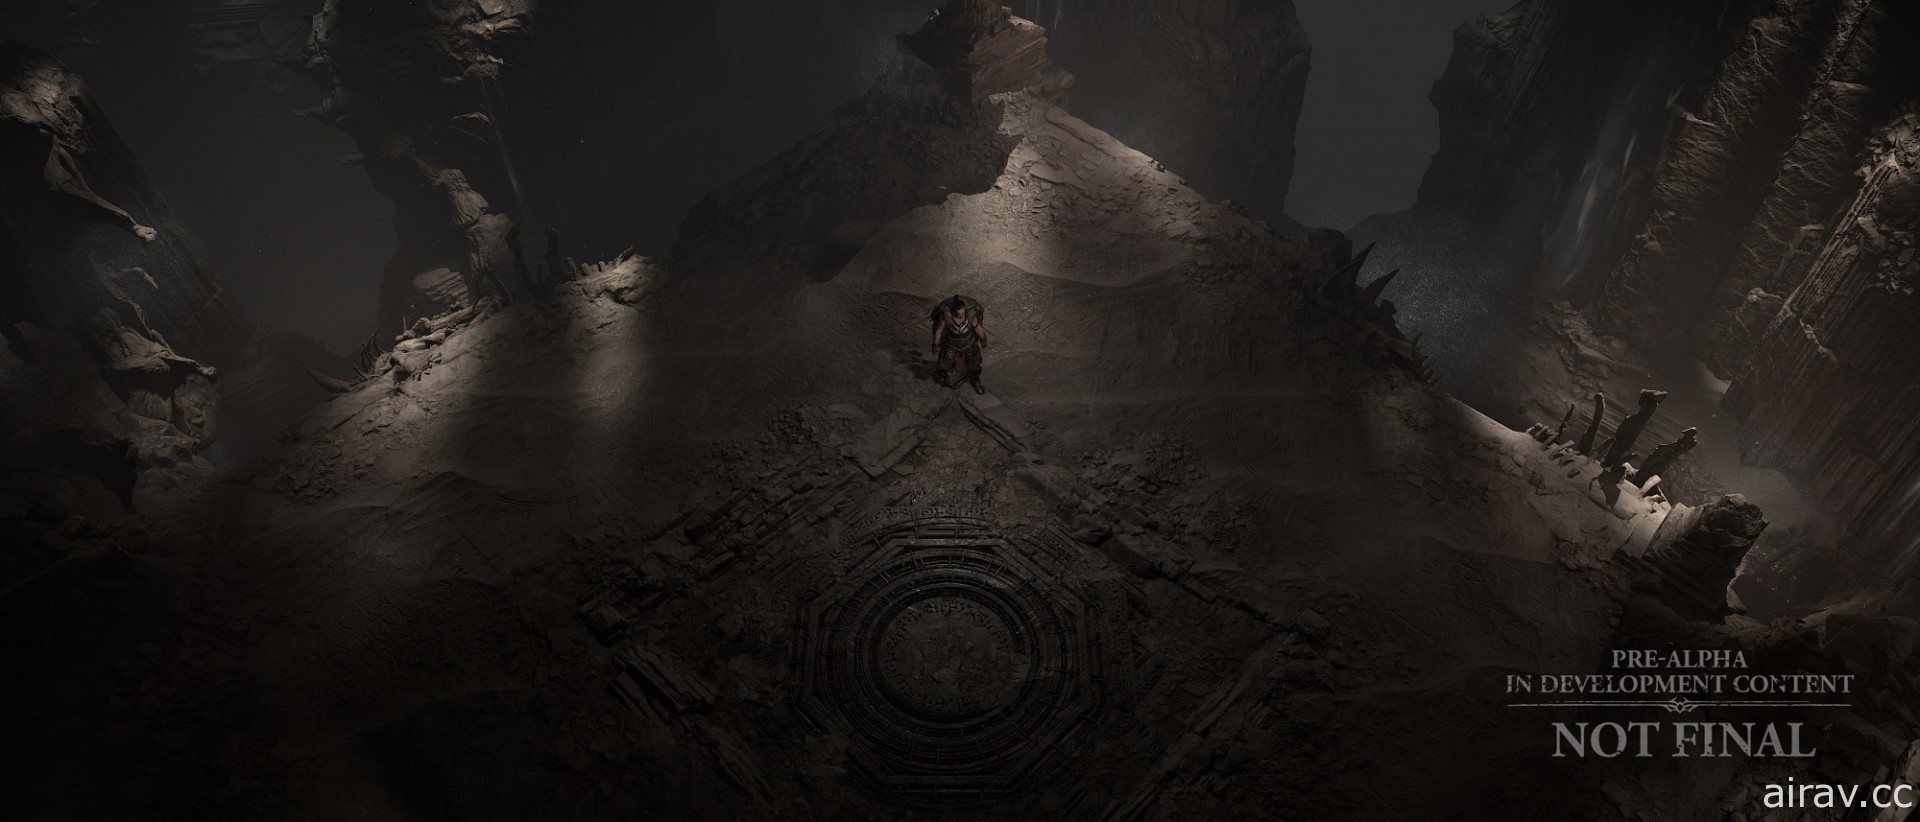 《暗黑破壞神 4》將有超過 150 個隨機地下城供探索 新公開環境美術影片